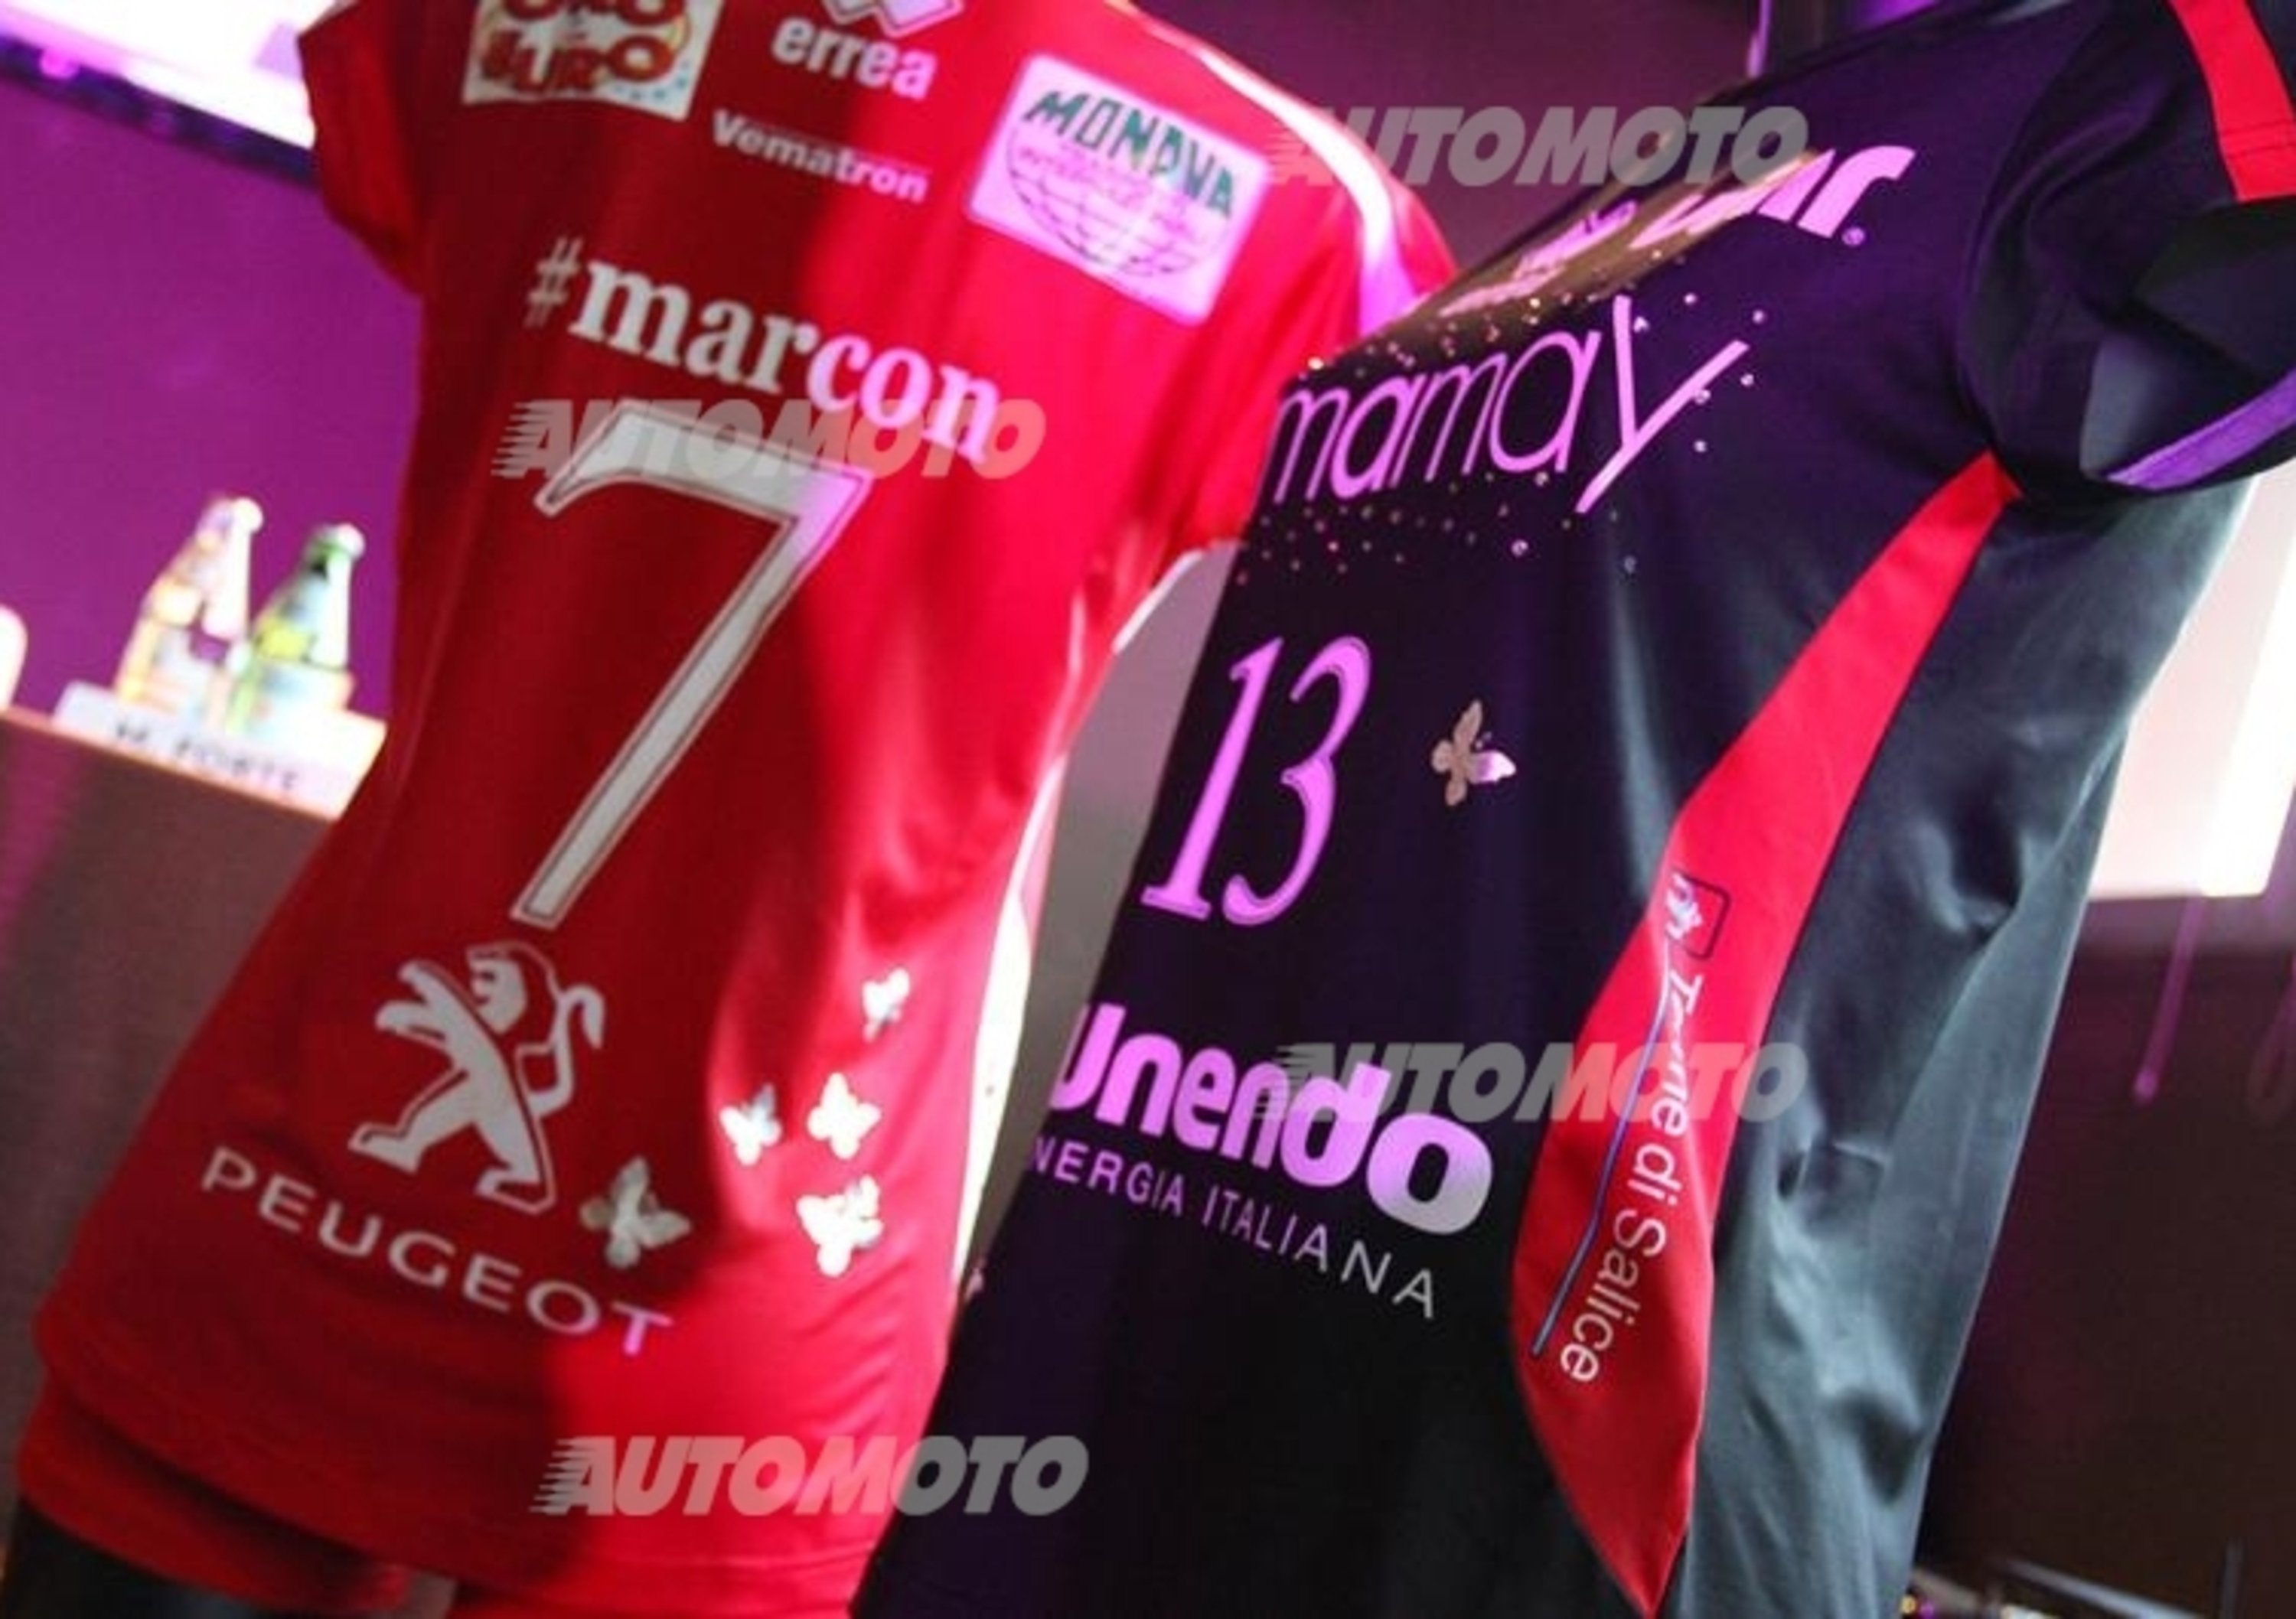 Peugeot sponsor della pallavolo femminile Unendo Yamamay